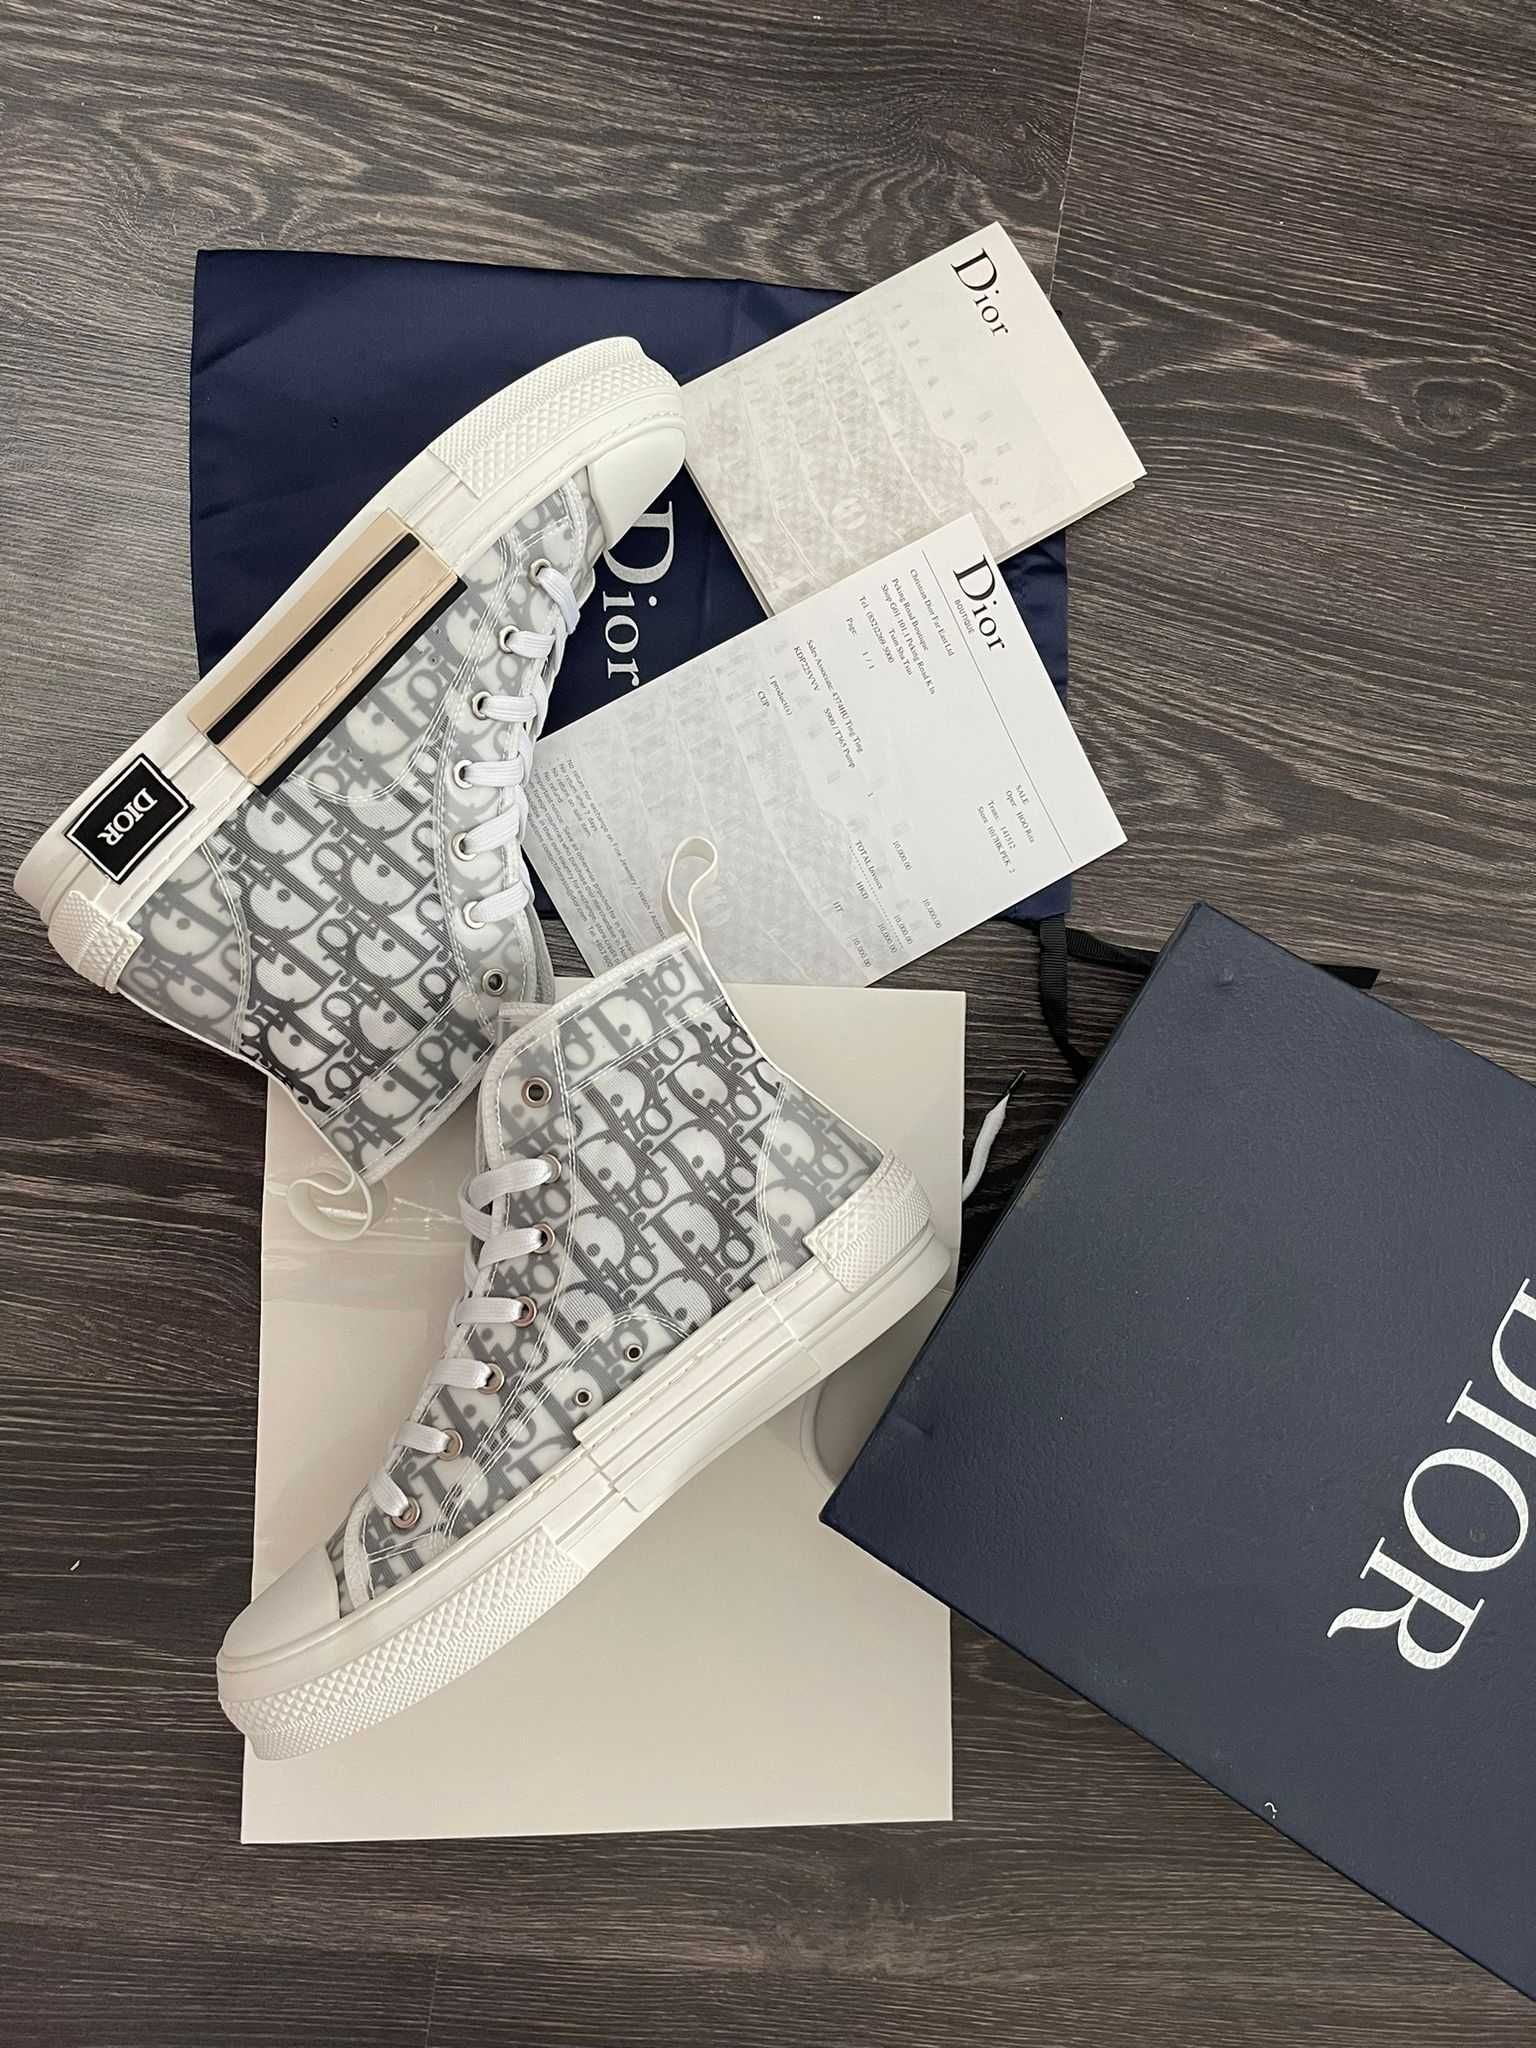 Adidasi Unisex Dior B 23 High | Full BOX